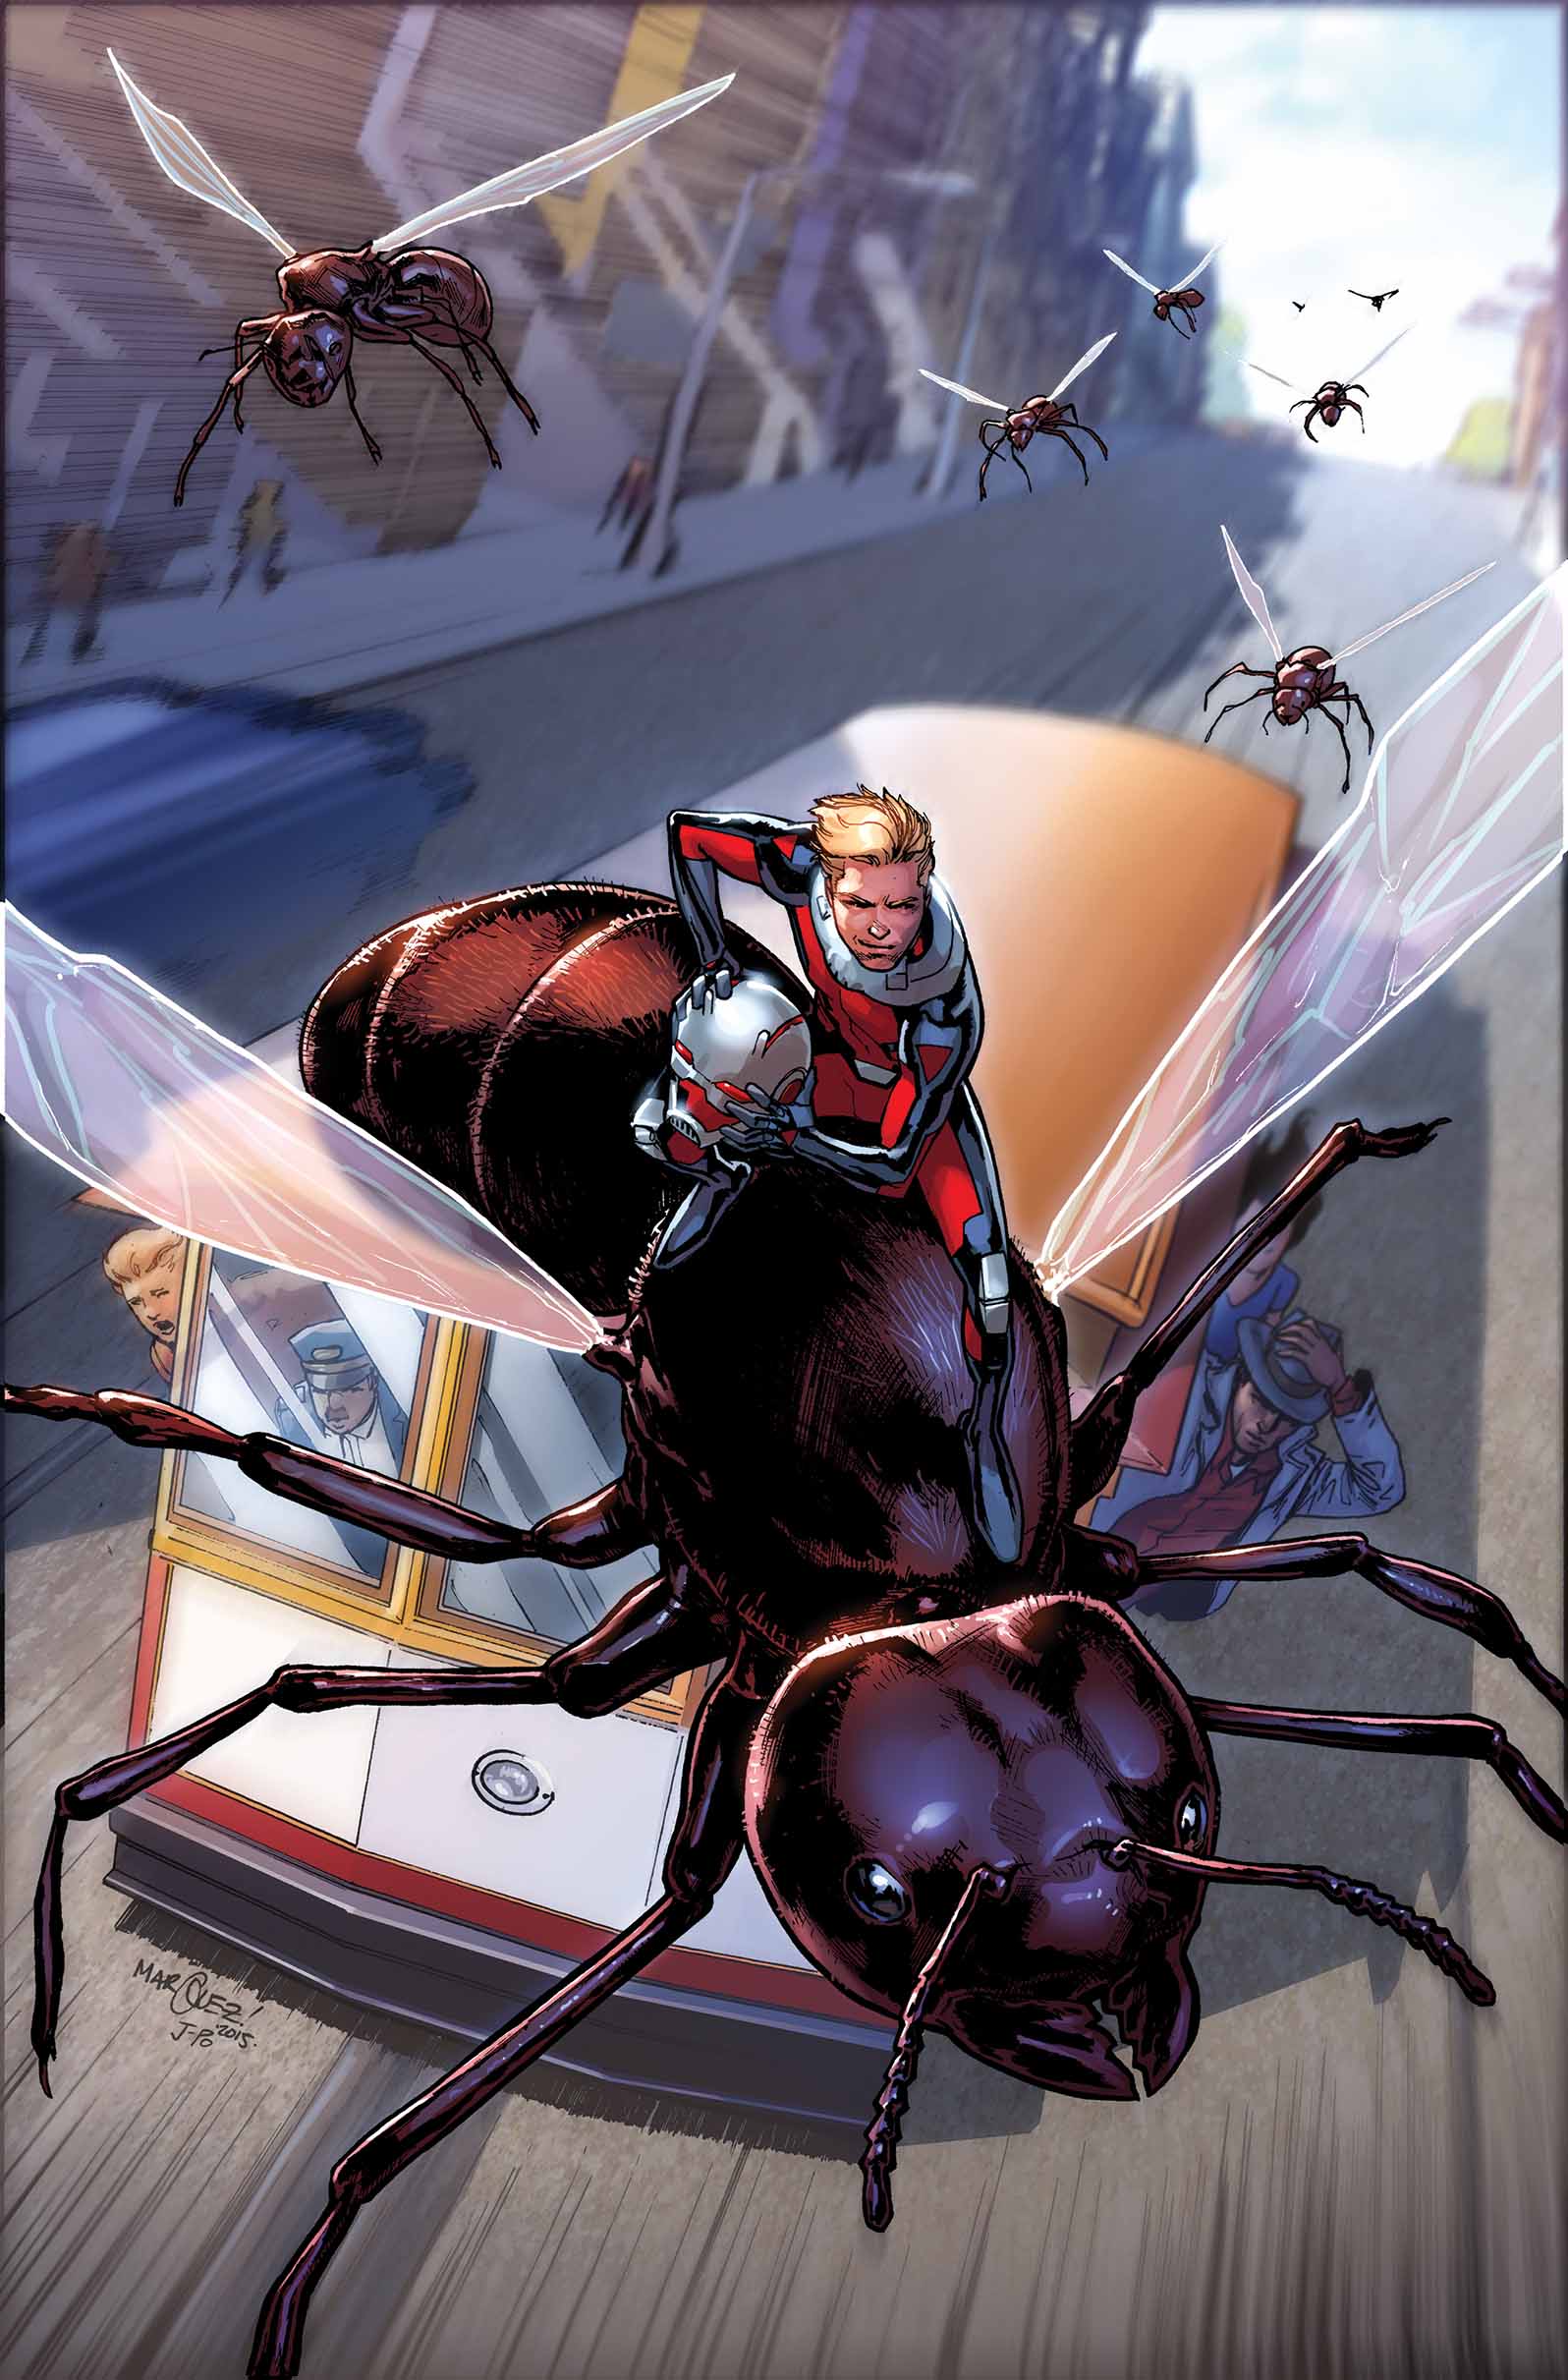 Warzones, C2E2, and Ant Man – Marvel Comics News April 20-24, 2015